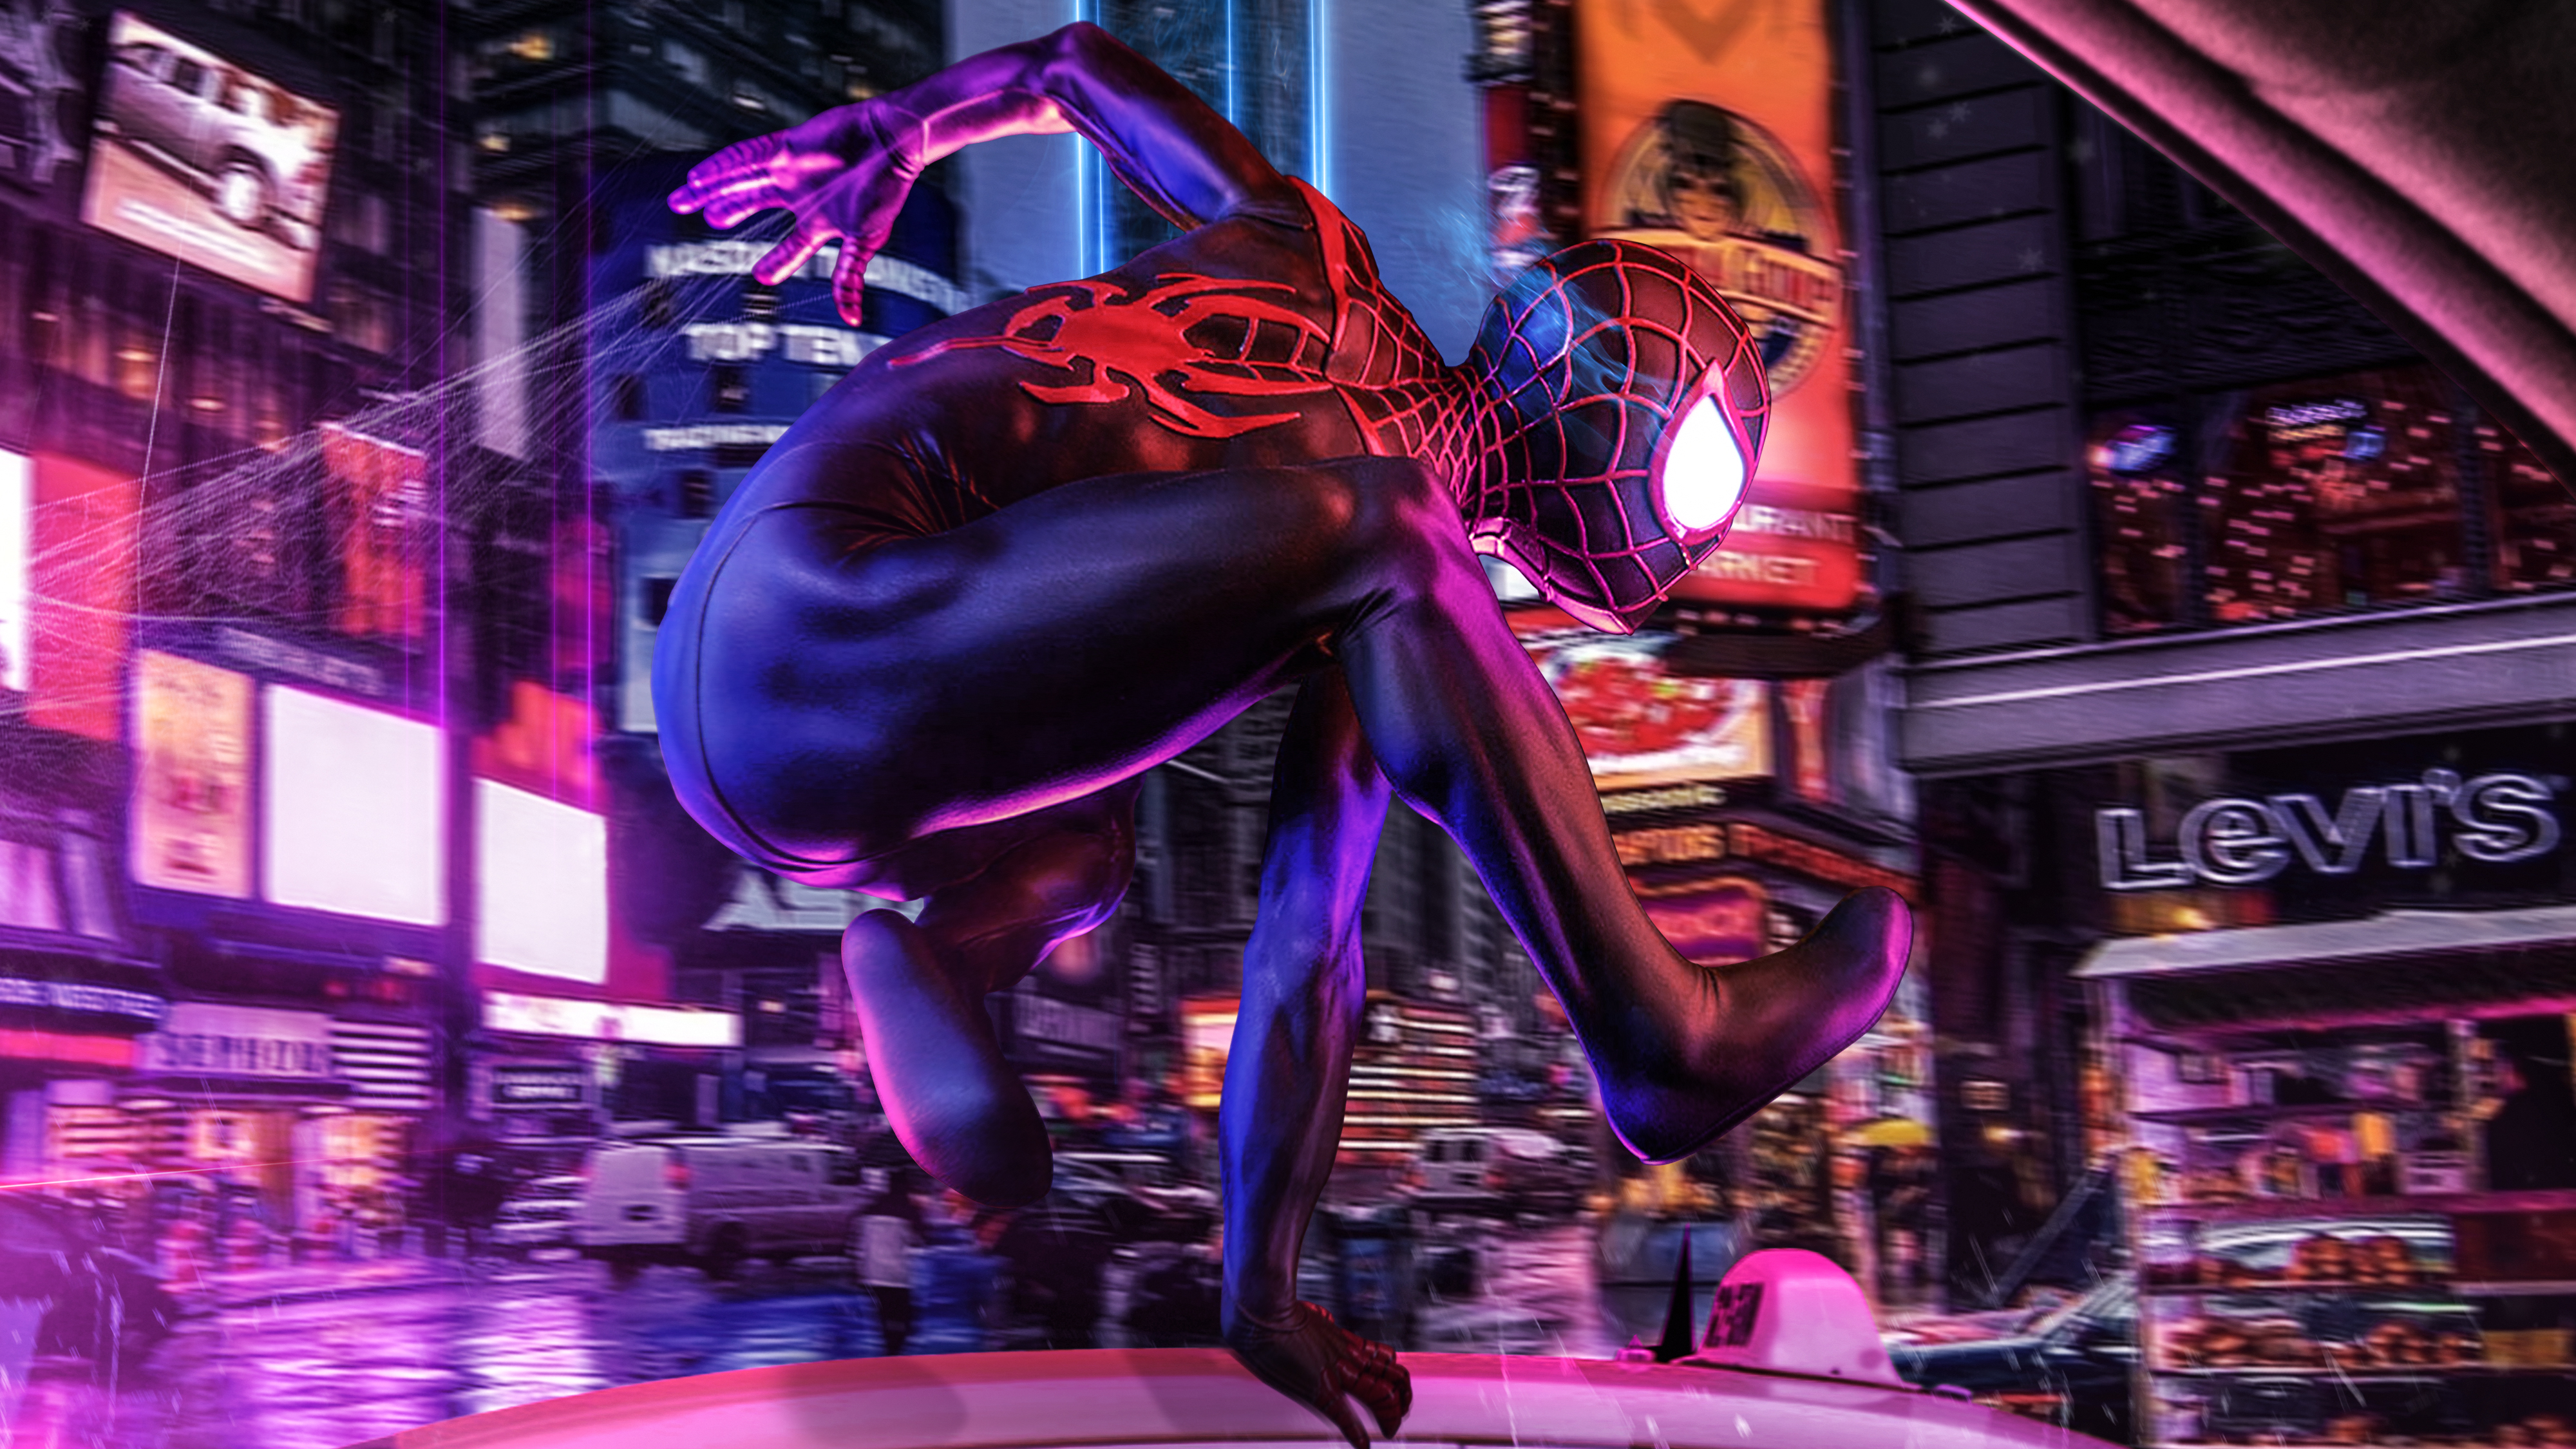 Spider-Man Into the Spider-Verse 4K